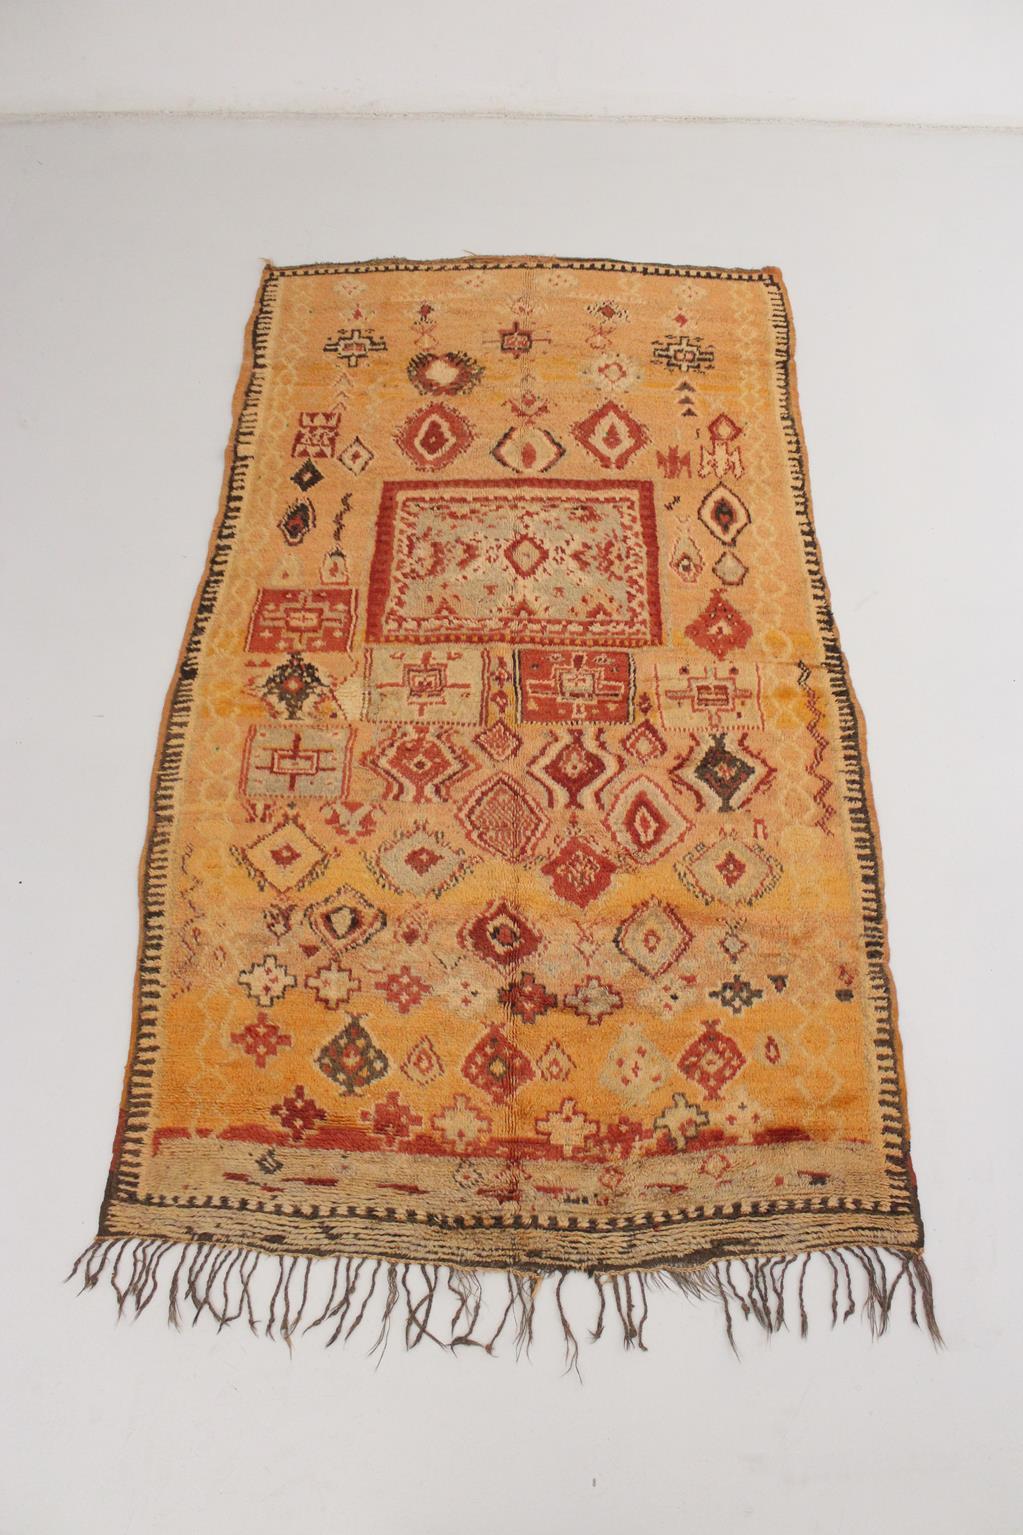 Dieser seltene Vintage-Teppich wurde in der Gegend von Taznakht, Marokko, hergestellt.

Die Hauptfarbe würde ich 